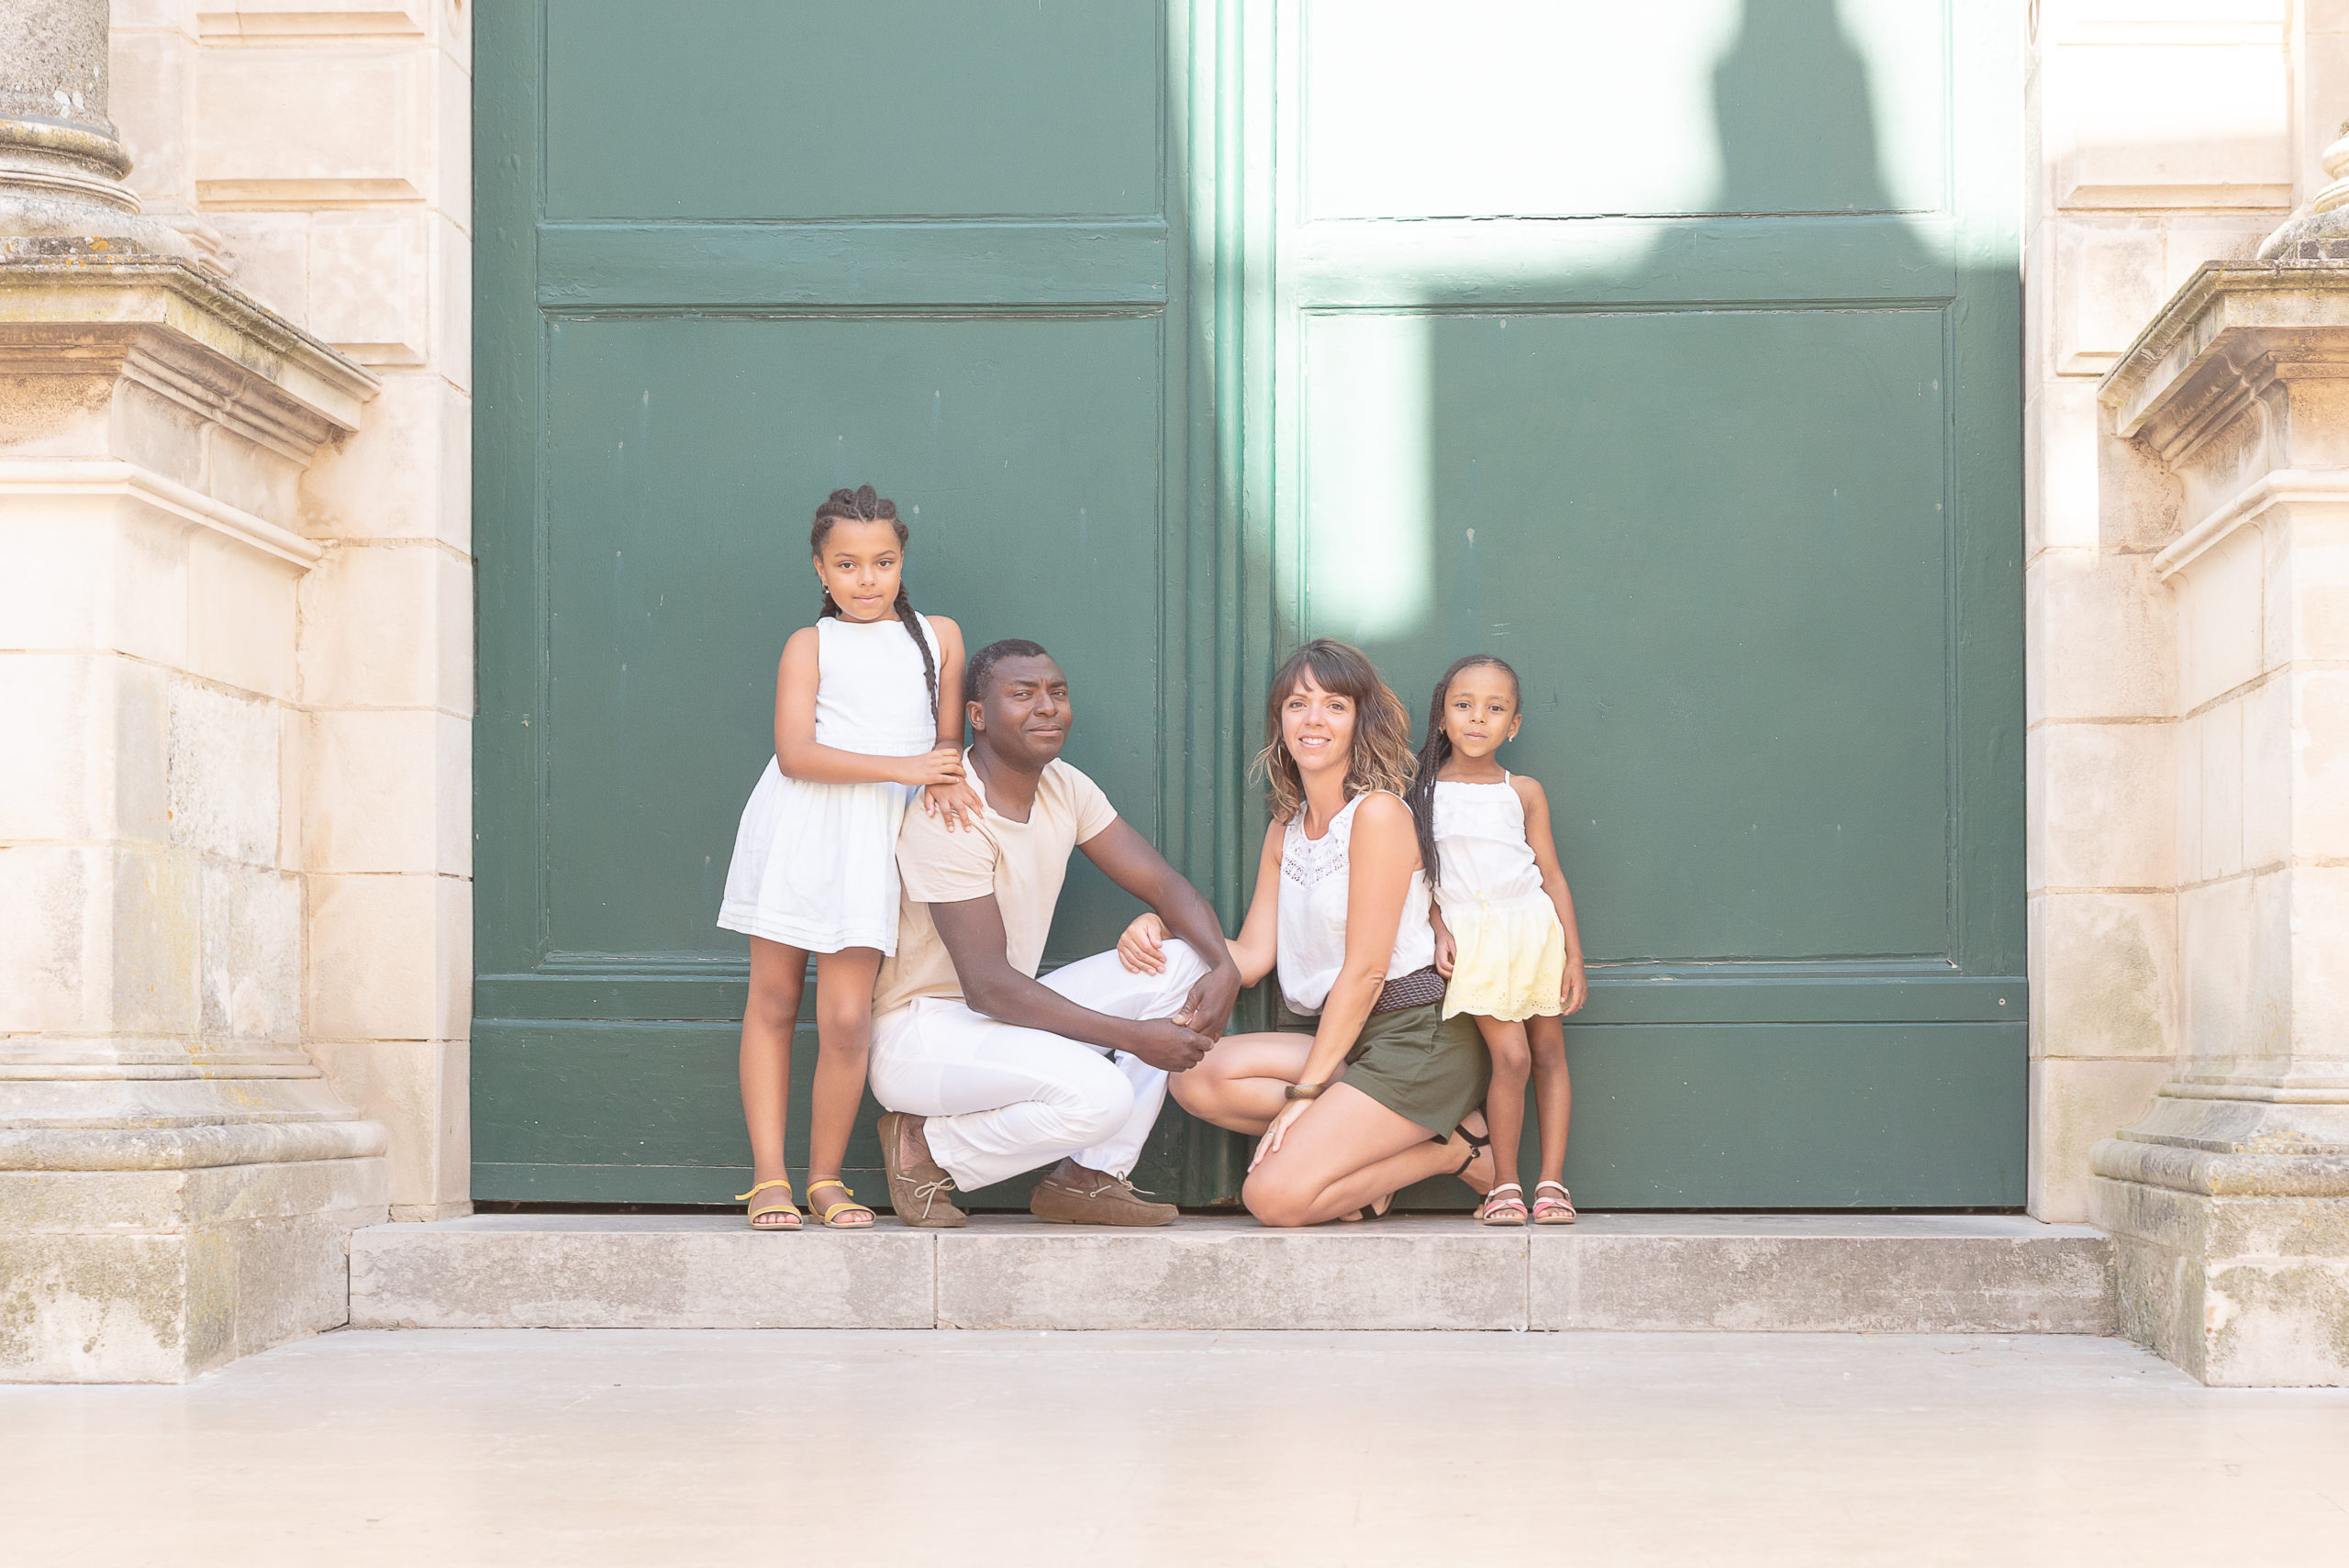 Séance photo famille aux Sables d'olonne par Sophie Rouzineau photographe